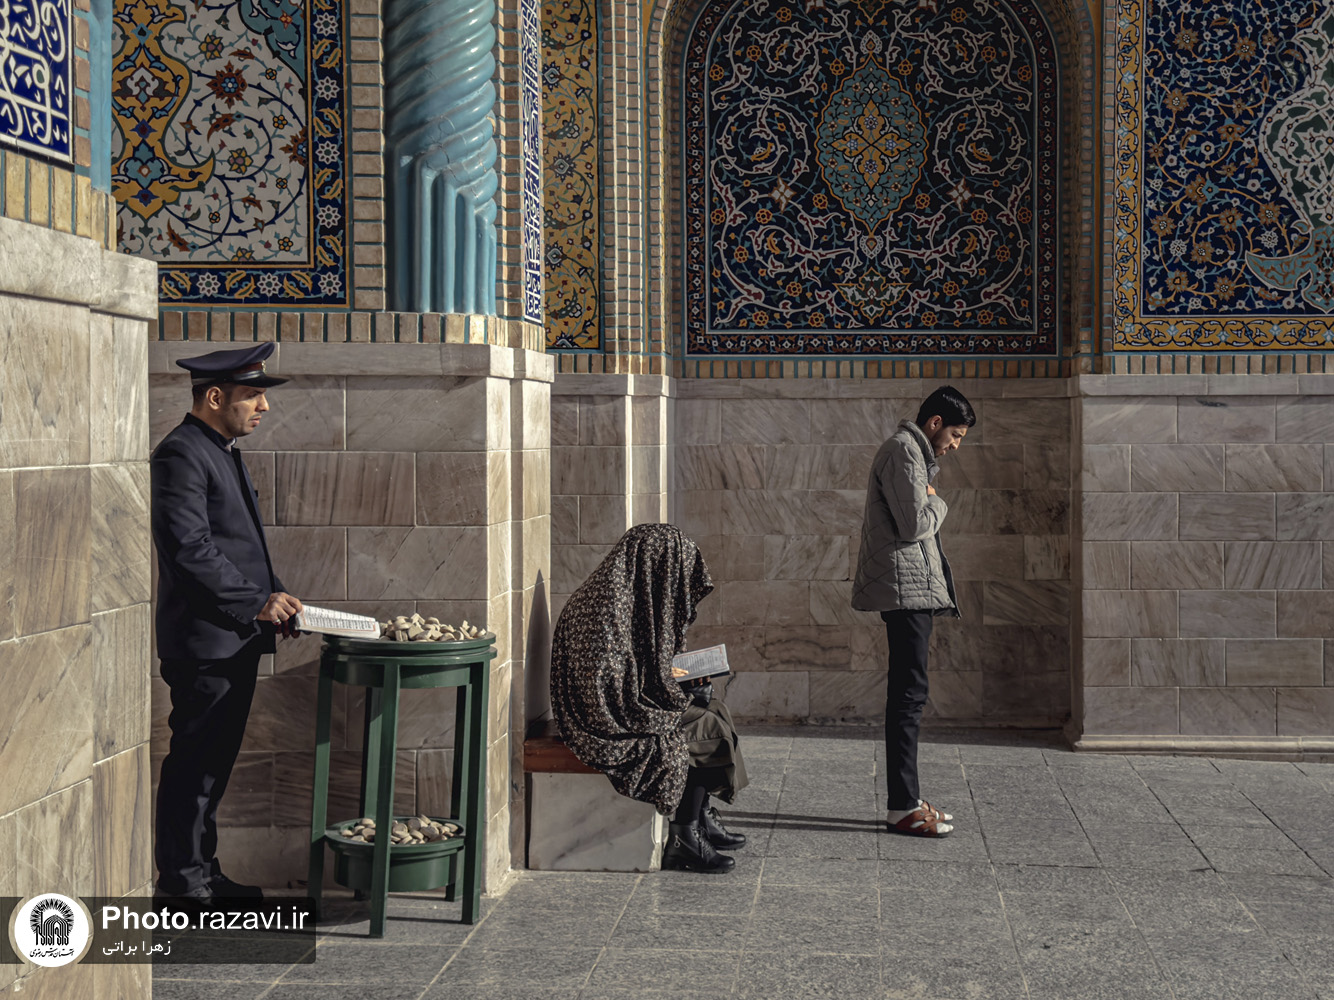 عکس با کیفیت: حال و هوای حرم امام رضا علیه السلام